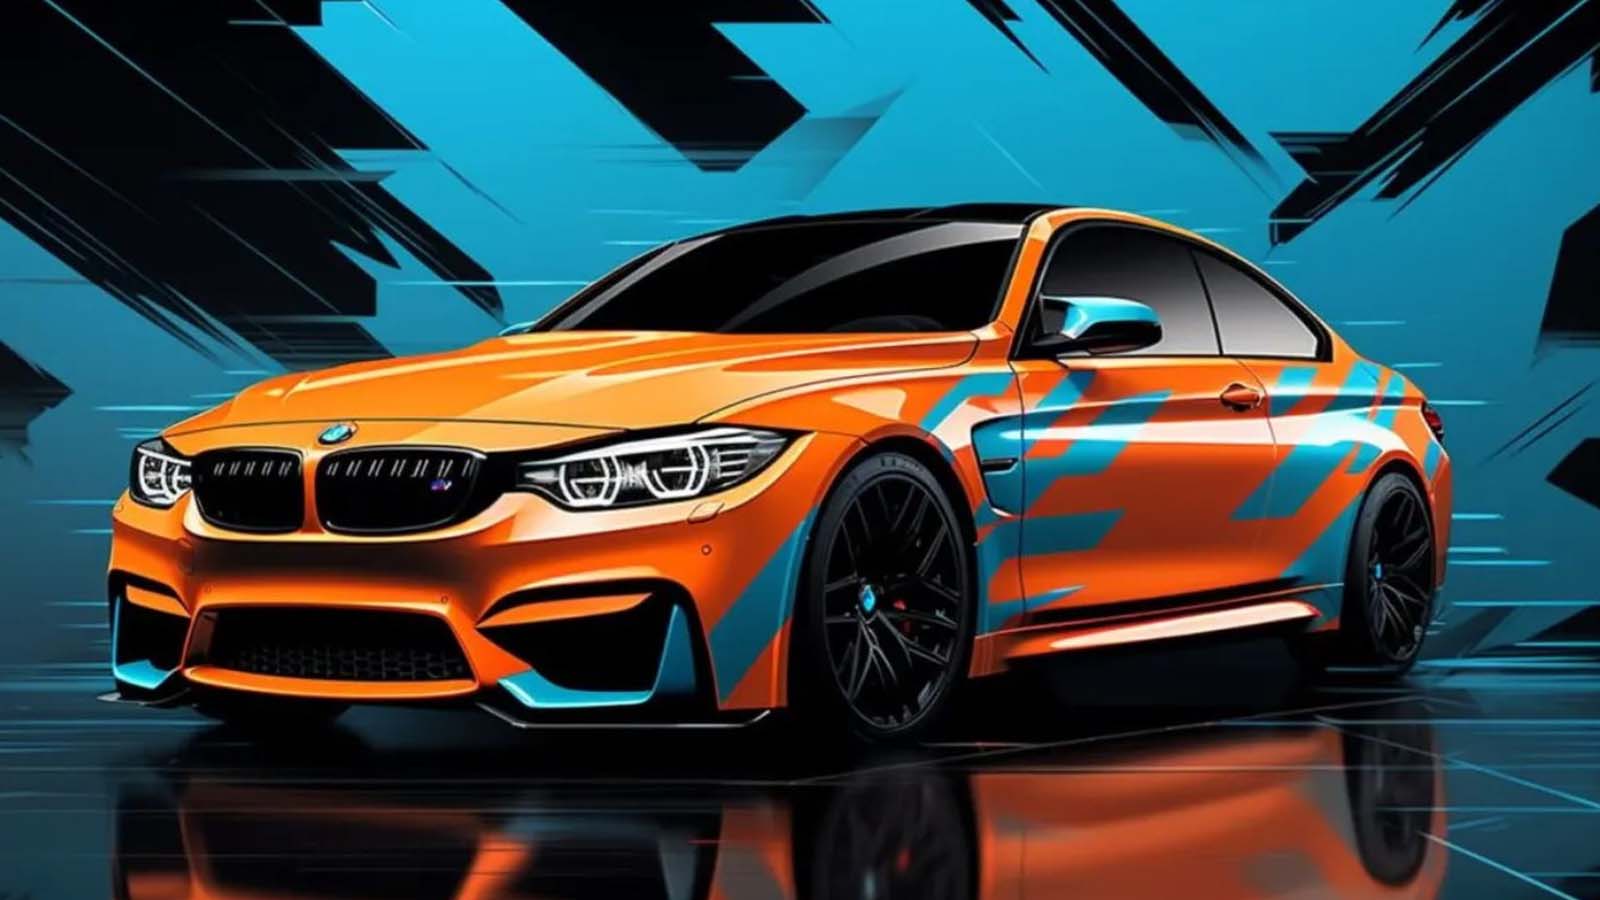 La rivoluzione dei colori con la nuova tecnologia BMW